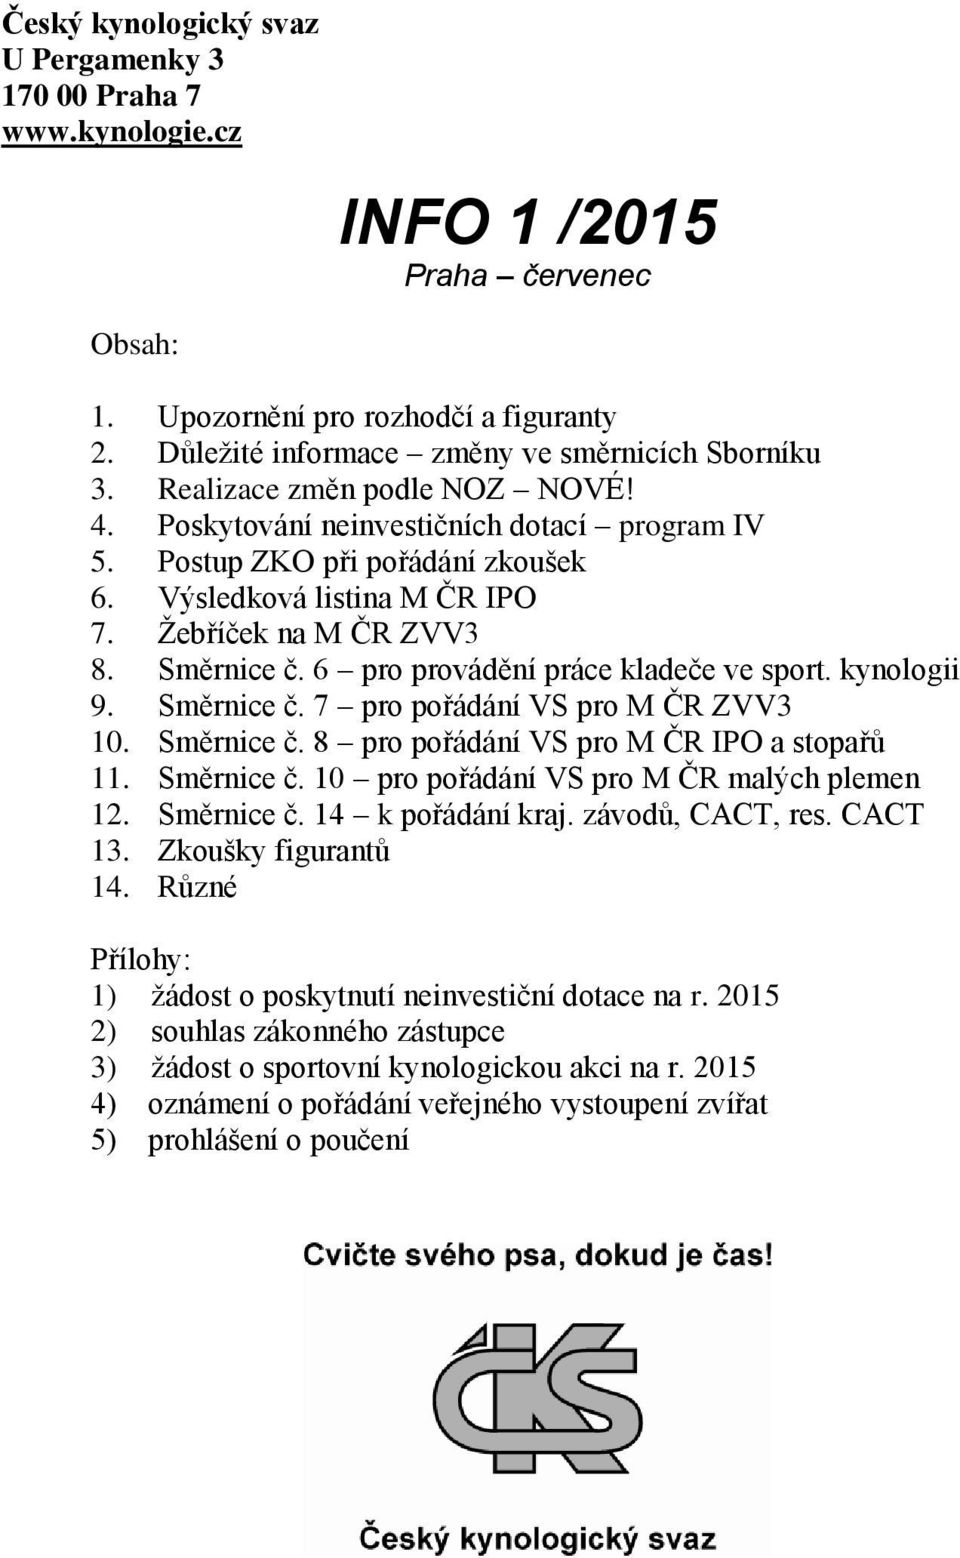 Žebříček na M ČR ZVV3 8. Směrnice č. 6 pro provádění práce kladeče ve sport. kynologii 9. Směrnice č. 7 pro pořádání VS pro M ČR ZVV3 10. Směrnice č. 8 pro pořádání VS pro M ČR IPO a stopařů 11.